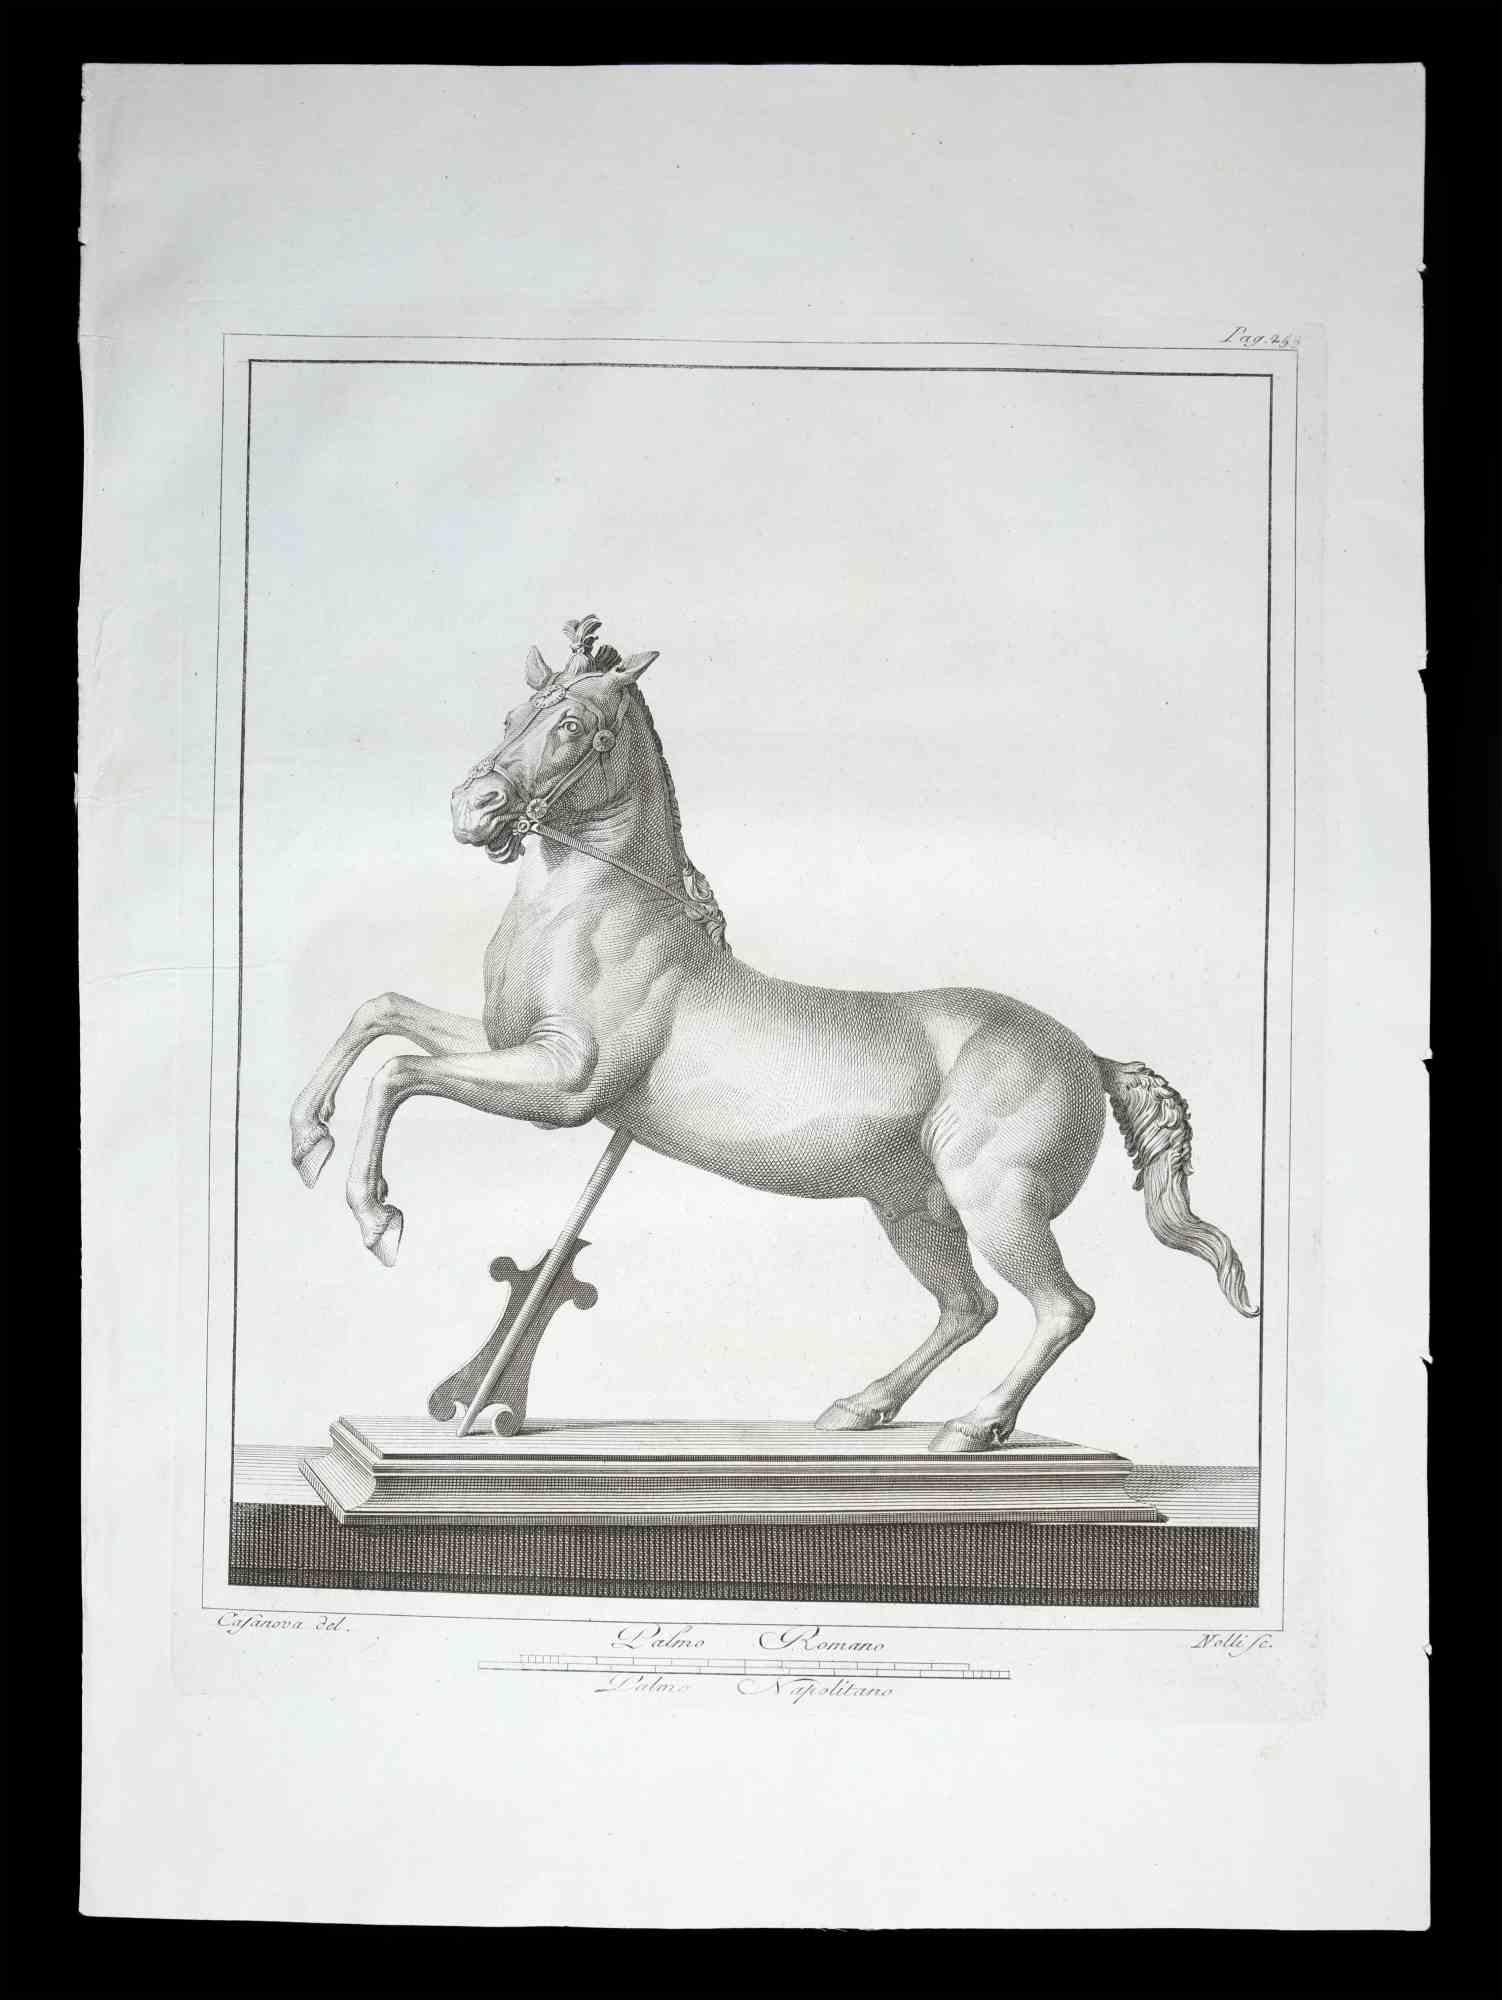 Antike römische Statue eines Pferdes, aus der Serie "Antiquitäten von Herculaneum", ist eine Originalradierung auf Papier von Carlo Nolli aus dem 18. Jahrhundert.

Signiert auf der Platte, unten rechts.

Guter Zustand mit Ausnahme einiger Faltungen